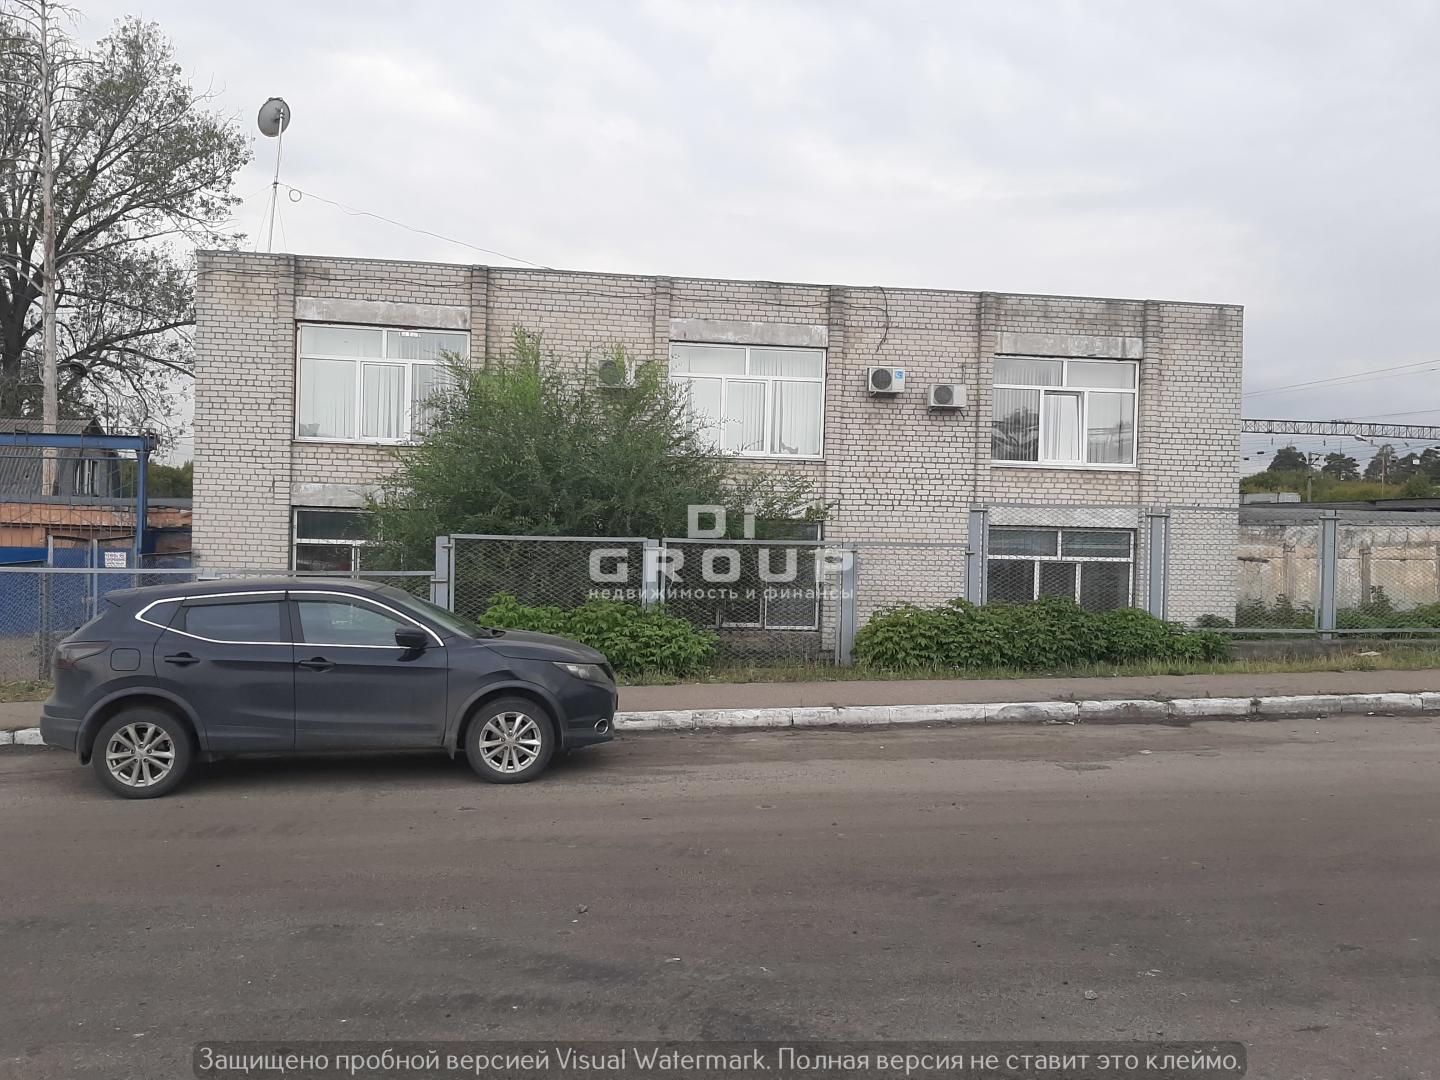 Продается здание на земельном участке промназначения в Московском районе. Вид разрешенного использования: под здание... - 2